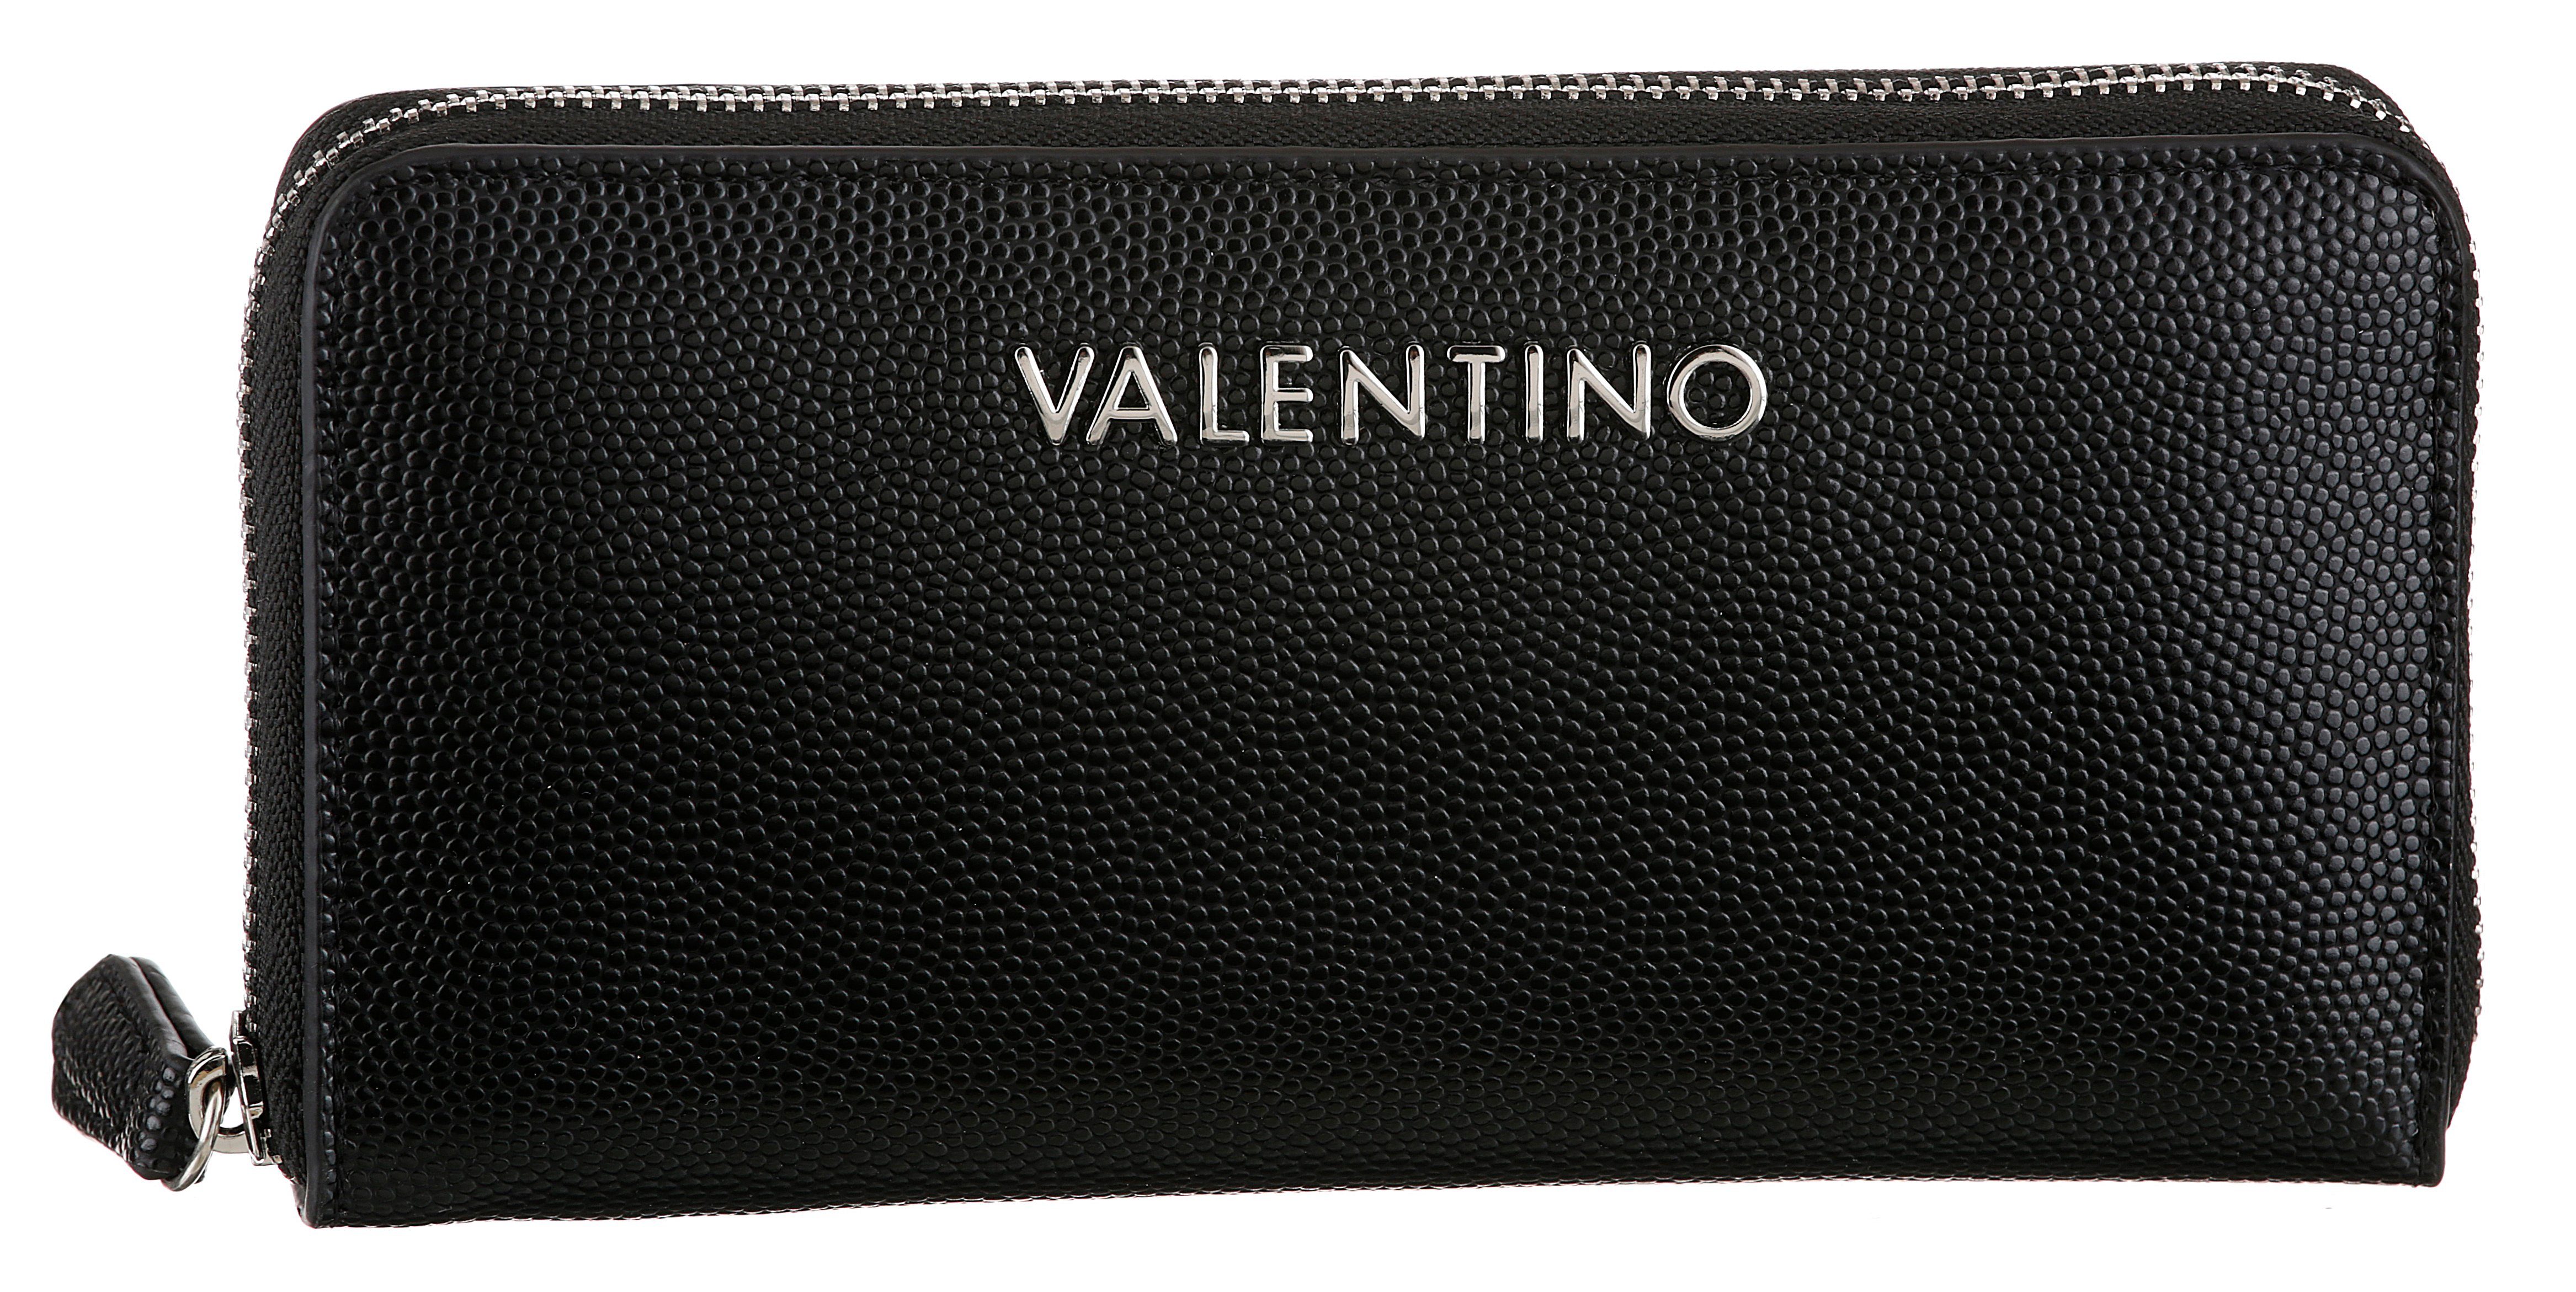 genarbter Details Geldbörse DIVINA, und BAGS leicht mit Oberfläche silberfarnene schwarz VALENTINO